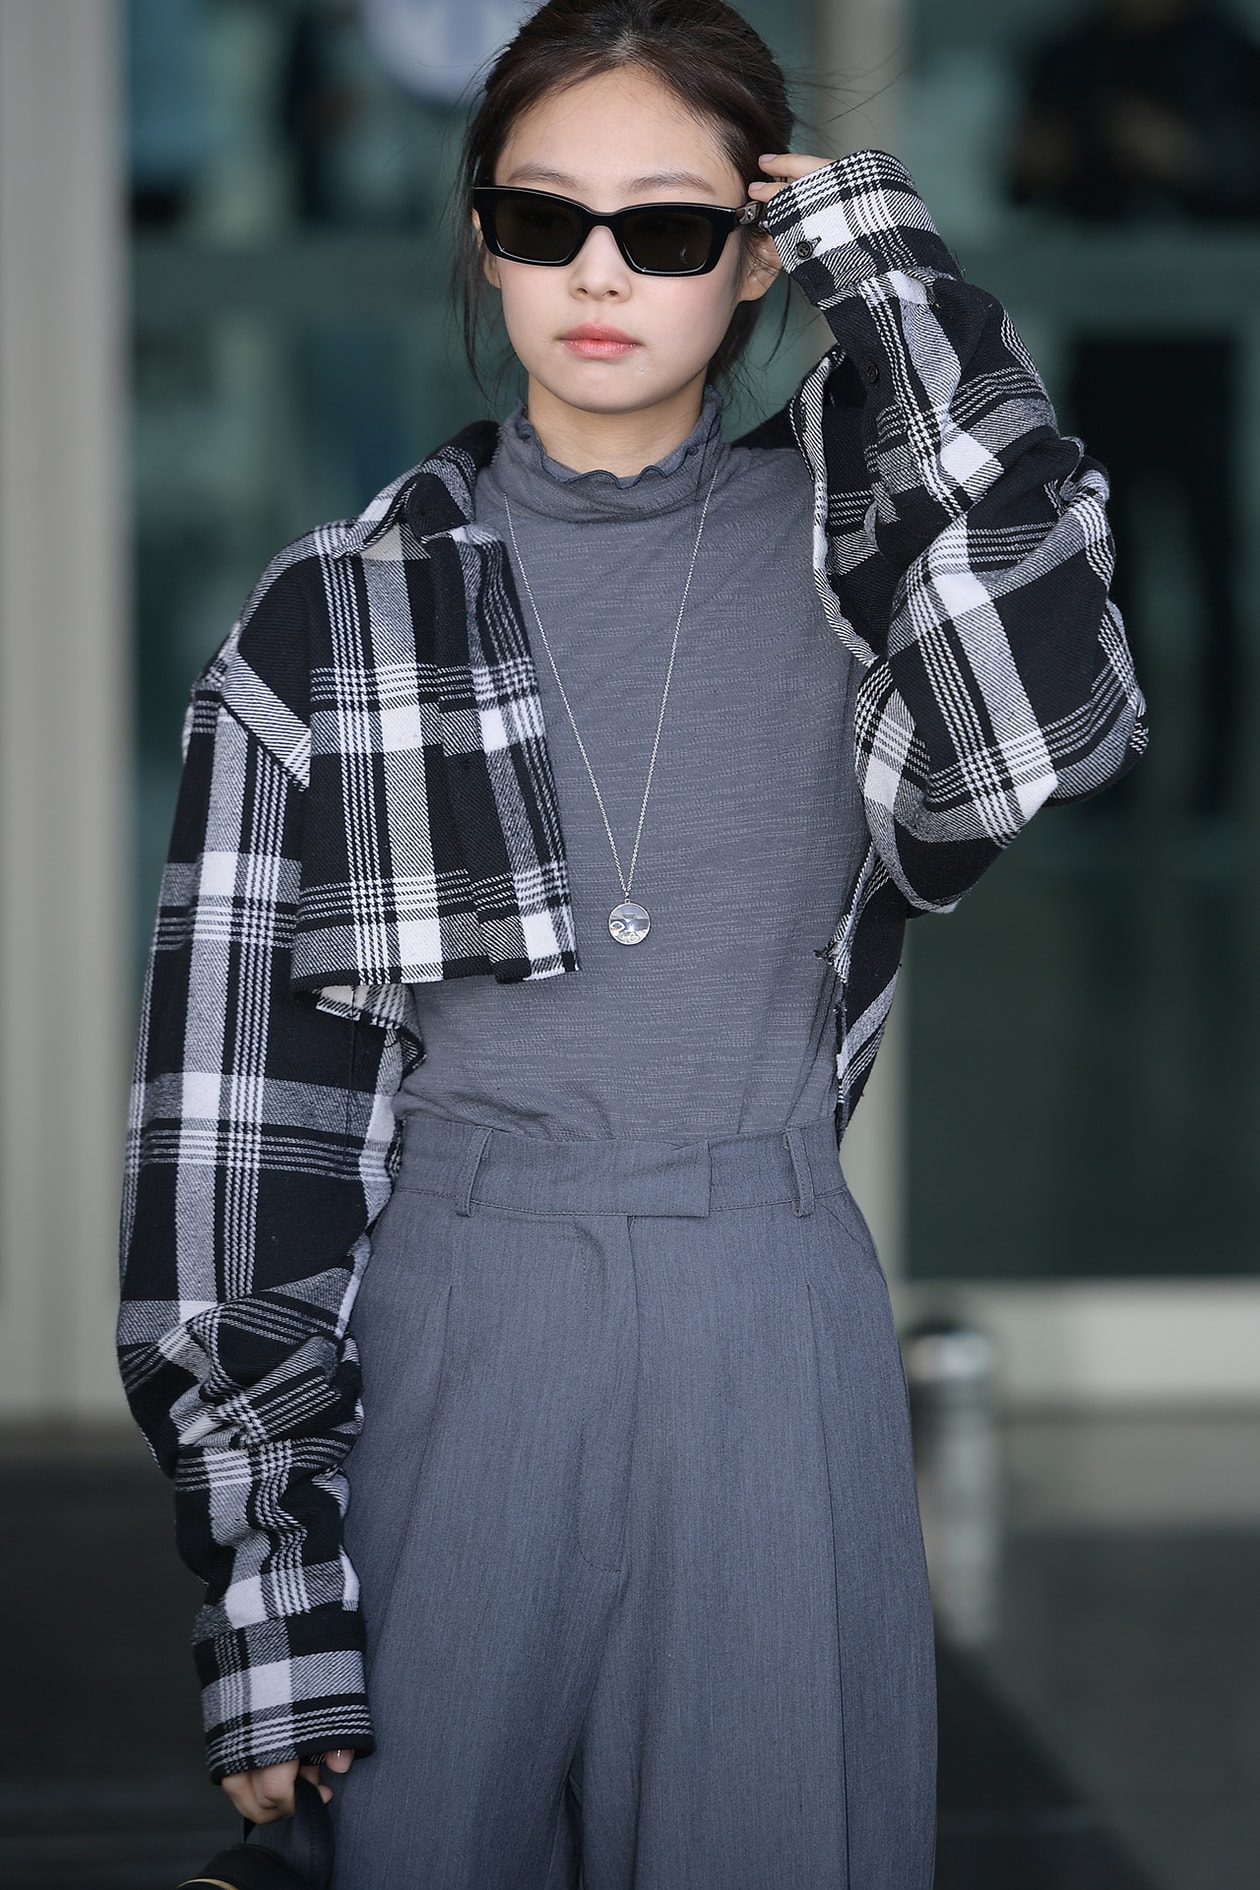 BLACKPINK Jennie Kim K-pop Singer Chanel Korean Artist Celebrity Fashion Style Outfit Wardrobe Essentials